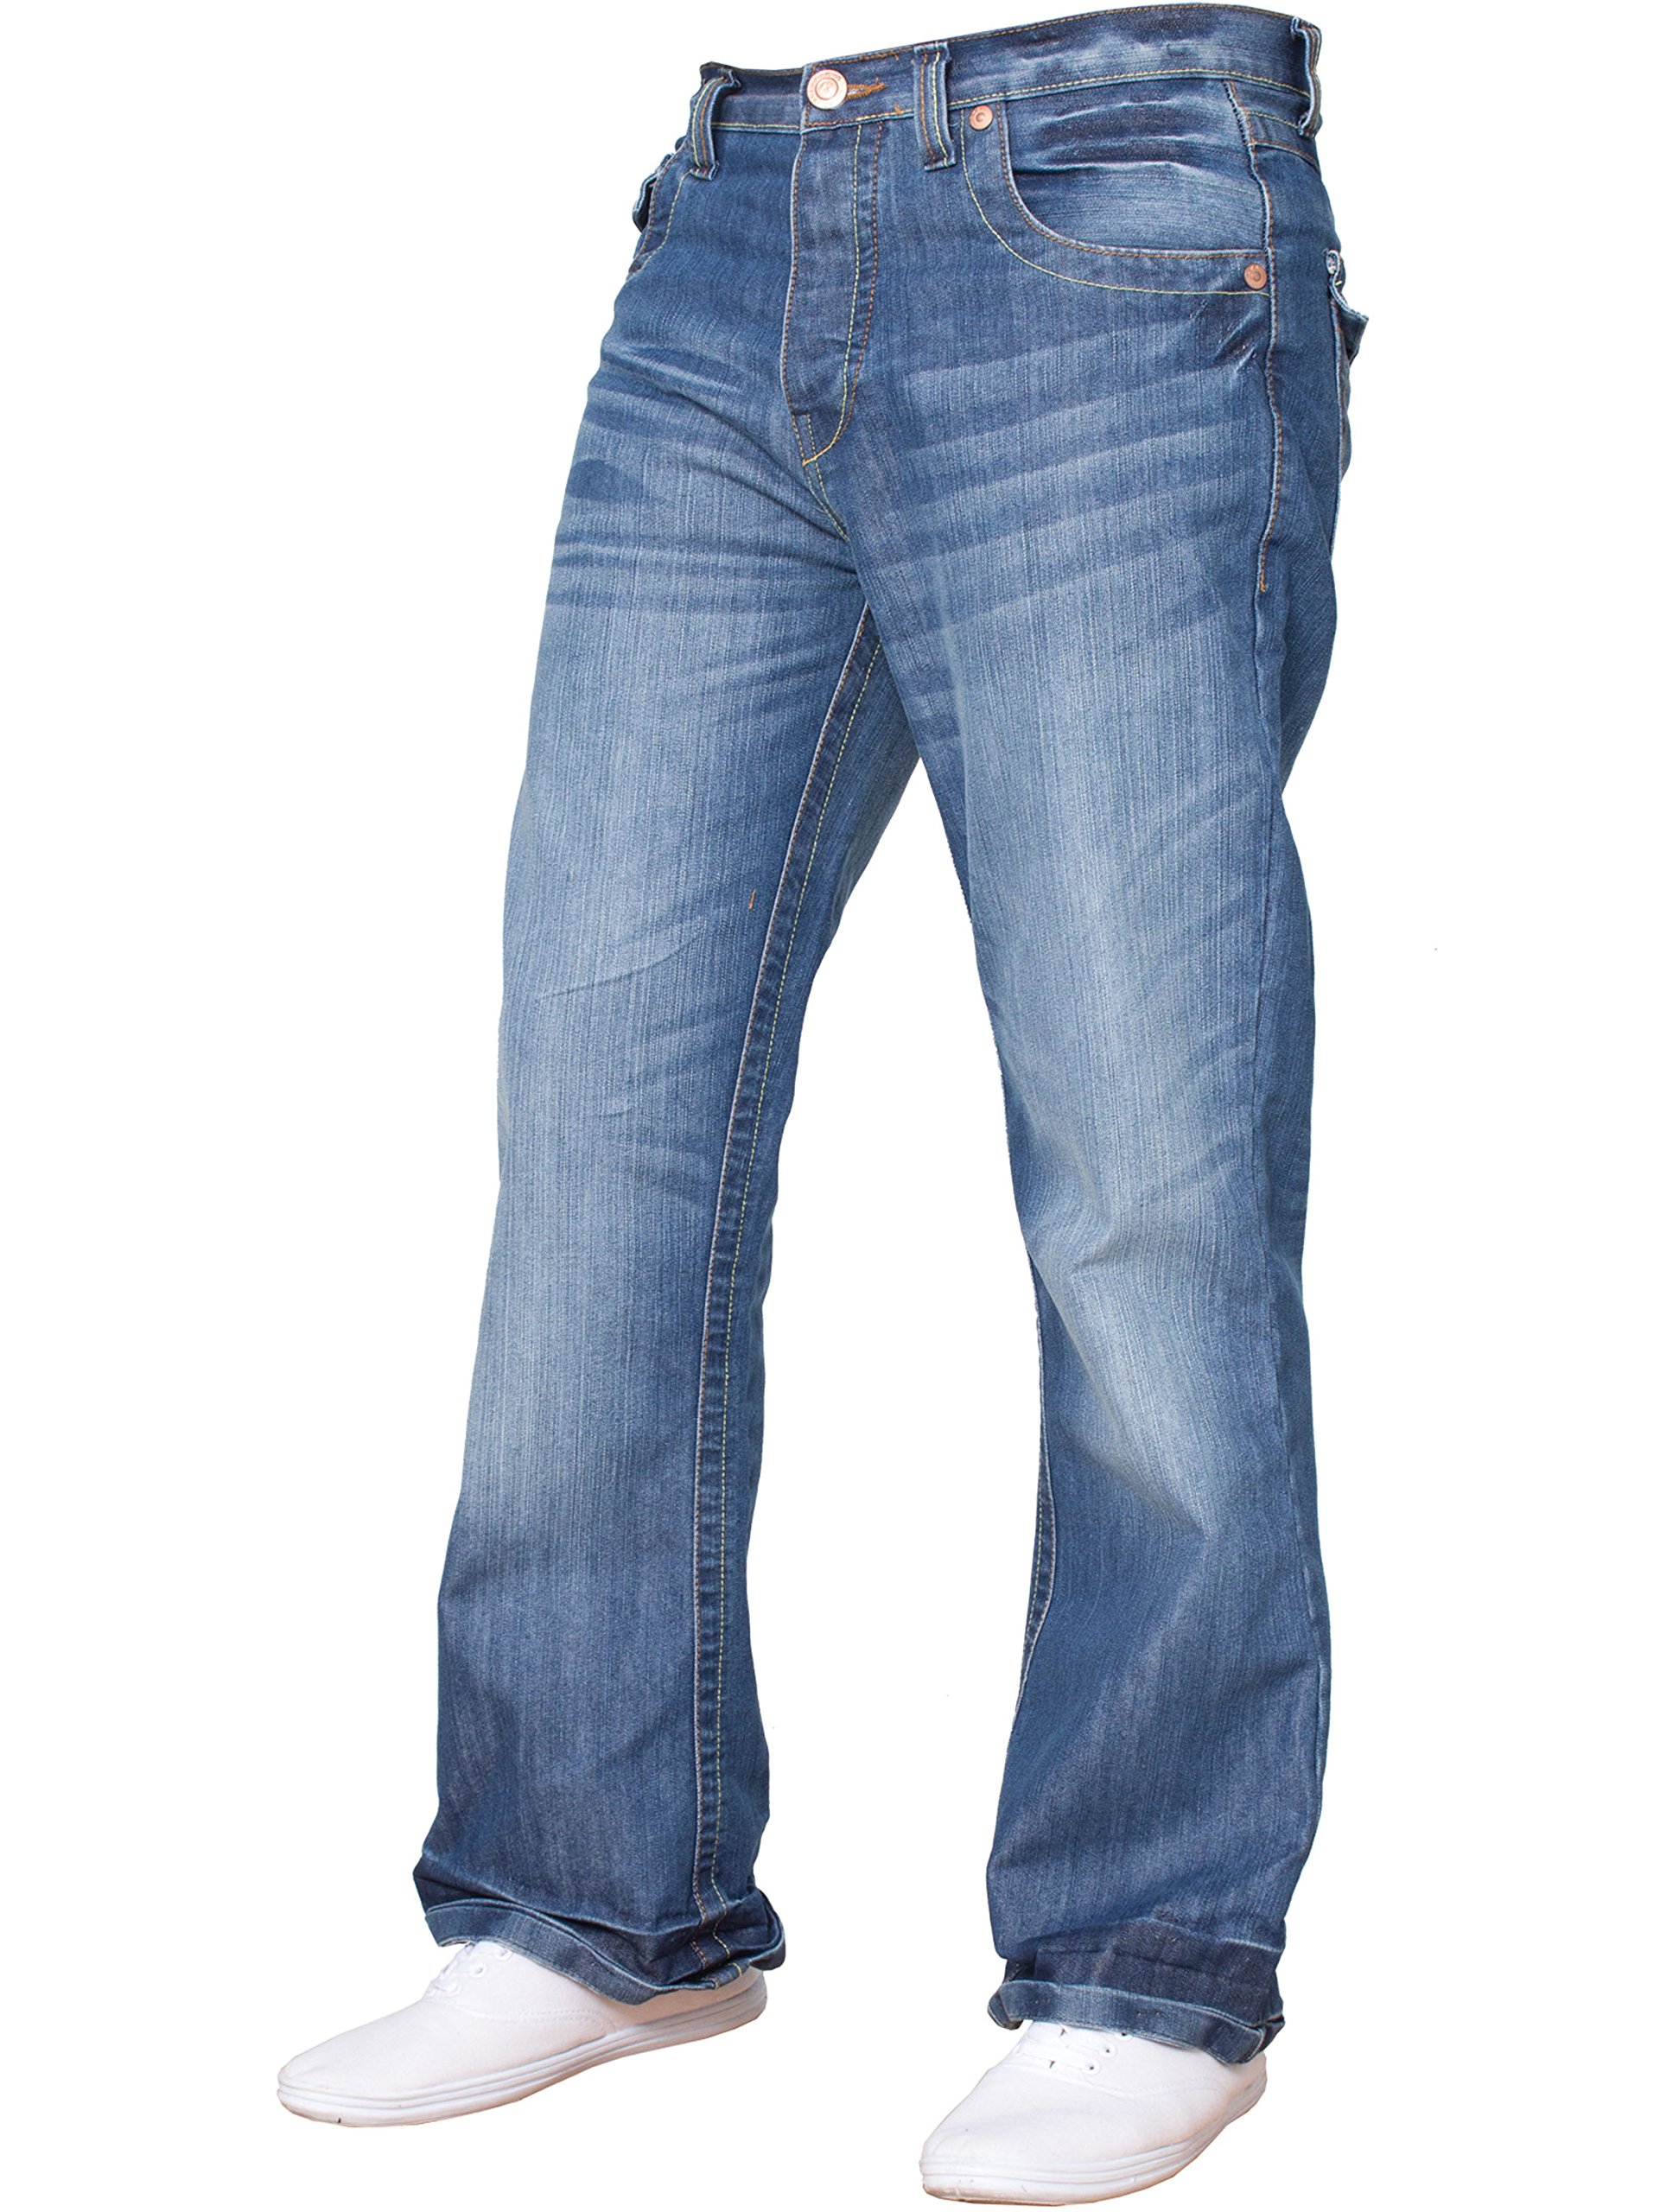 BNWT Herren-Jeans, Bootcut, ausgestellt, große King Size, weites Bein, Blau, Denim Gr. 44W x 30L, Mehrfarbig